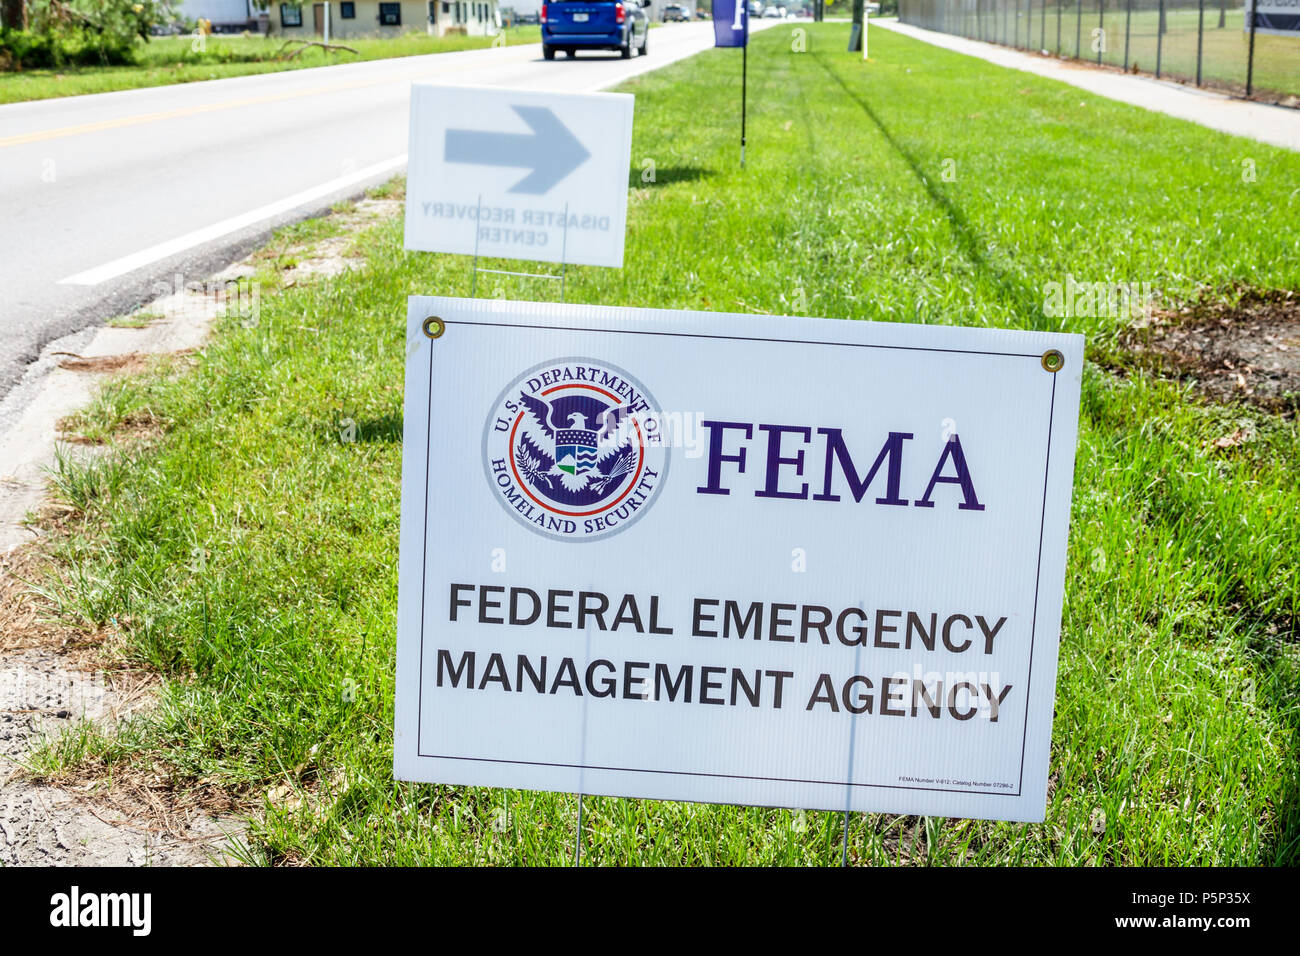 Immokalee Florida,Centre de reprise d'activité de l'État FEMA,secours en cas de tempête,signalisation routière,FL170925213 Banque D'Images